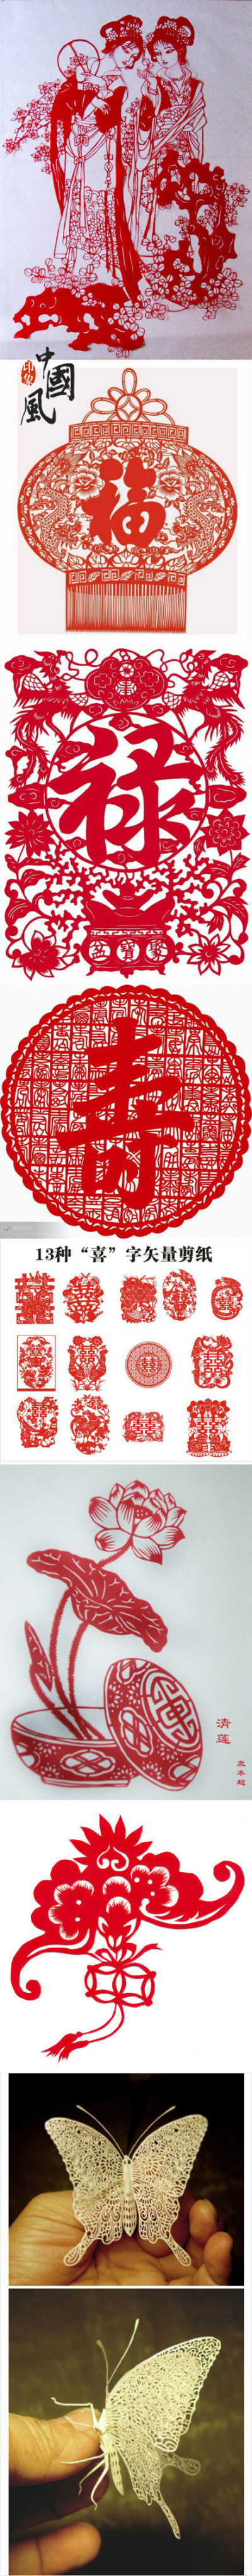 中国传统文化之剪纸艺术。美爆了！！